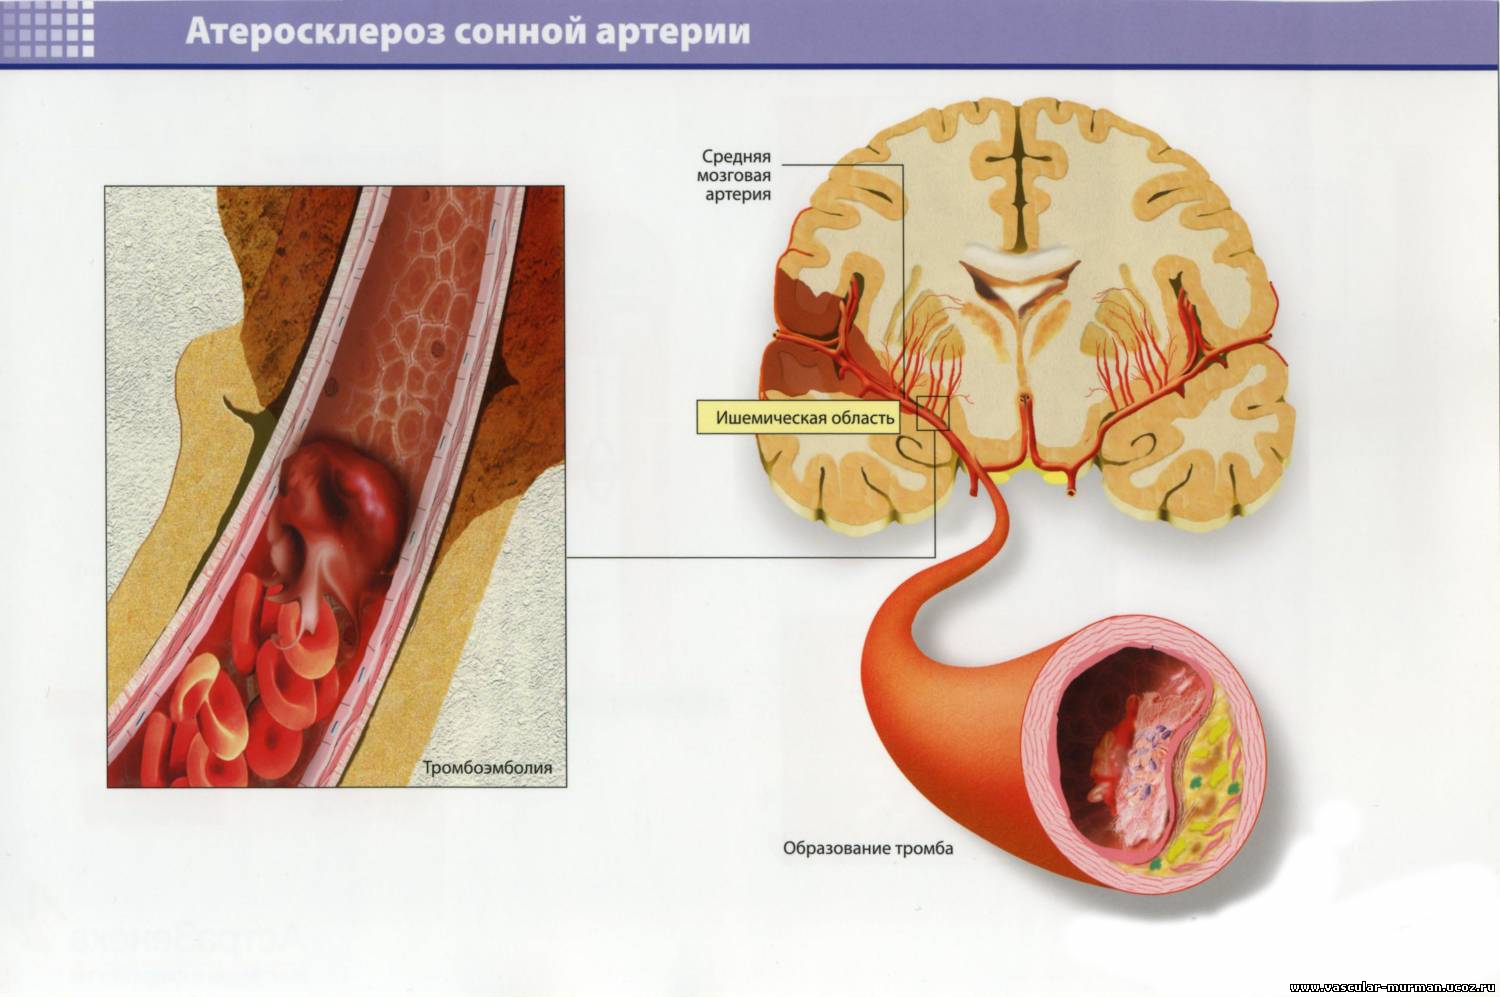 Тромбозы сосудов головного